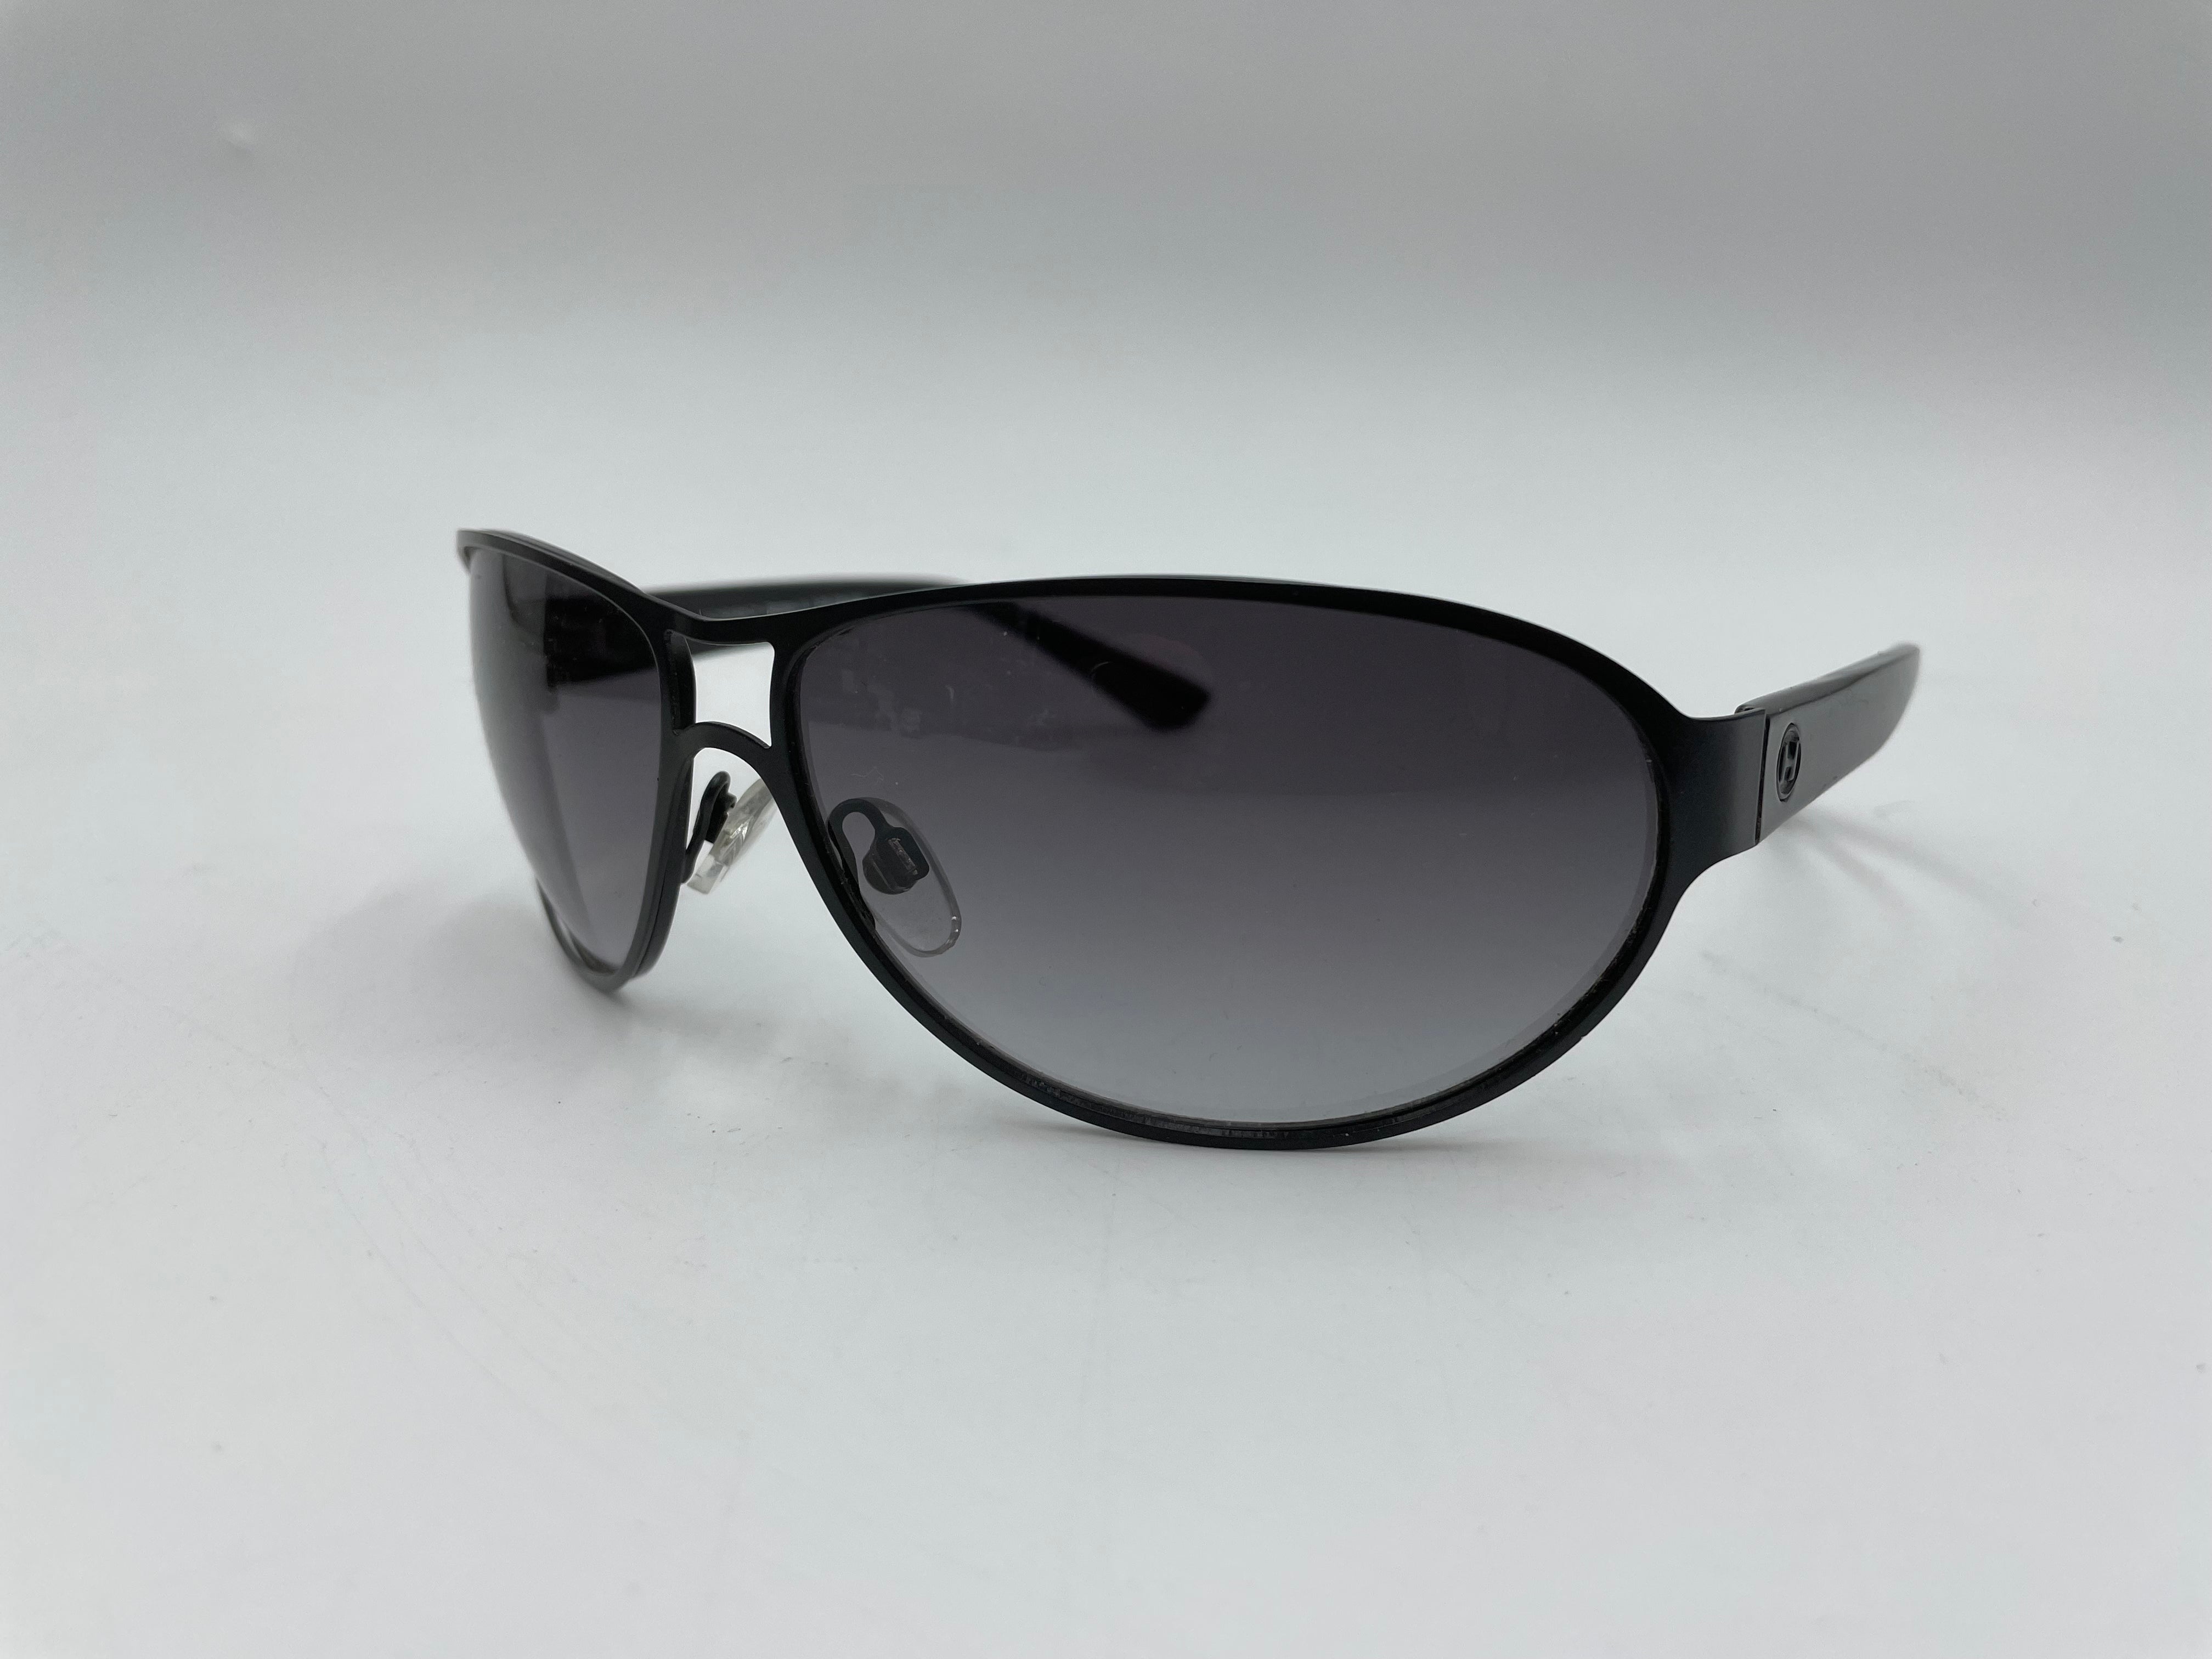 Eschenbach/Humphrey Sunglasses